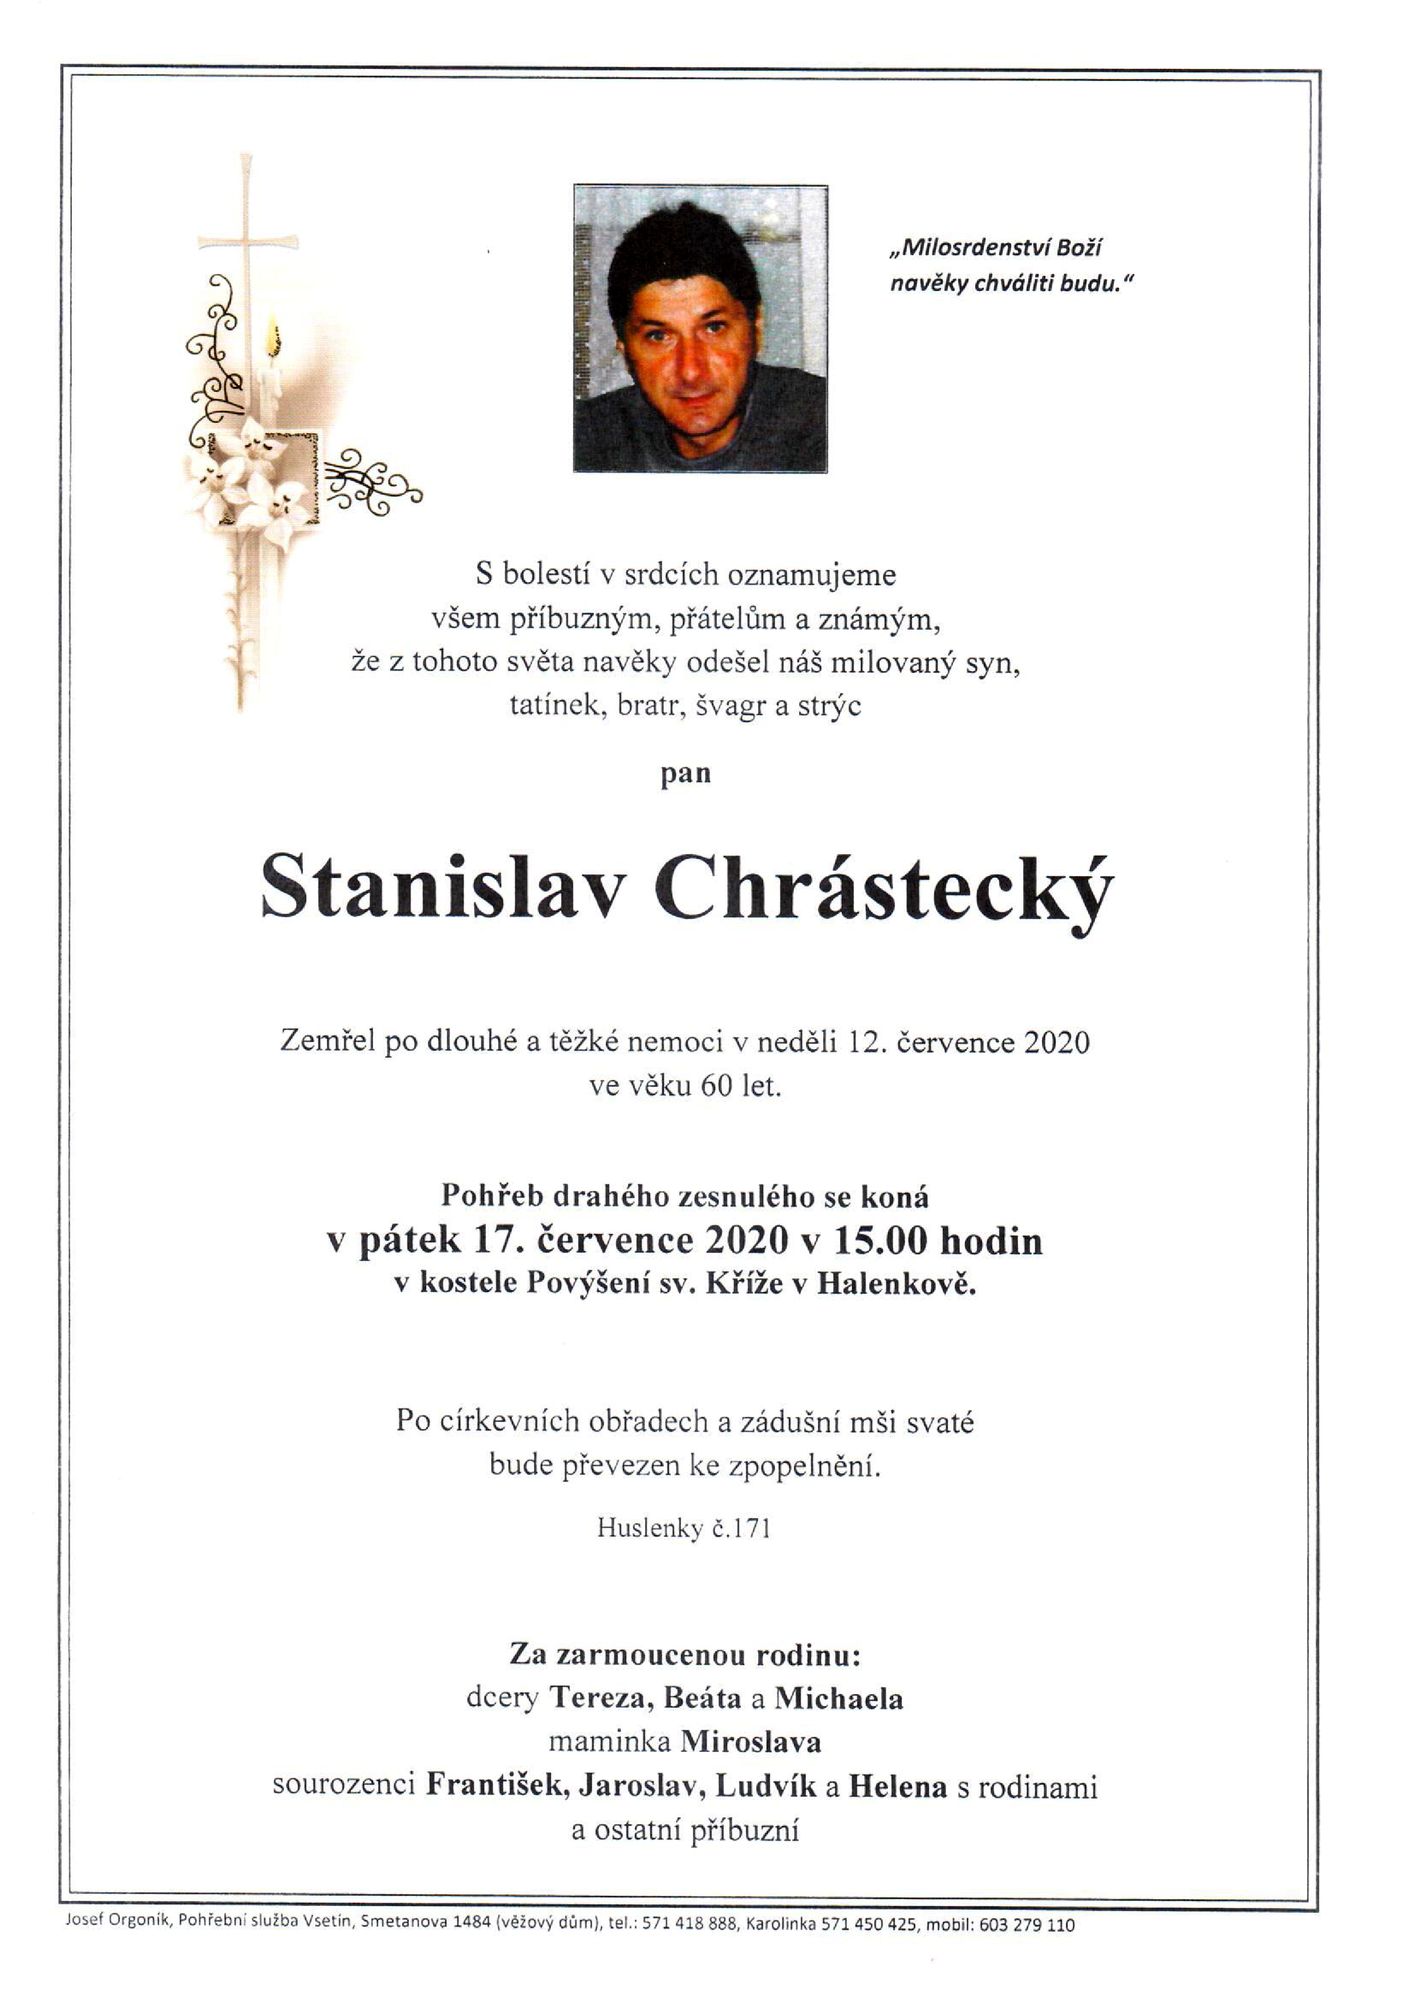 Stanislav Chrástecký